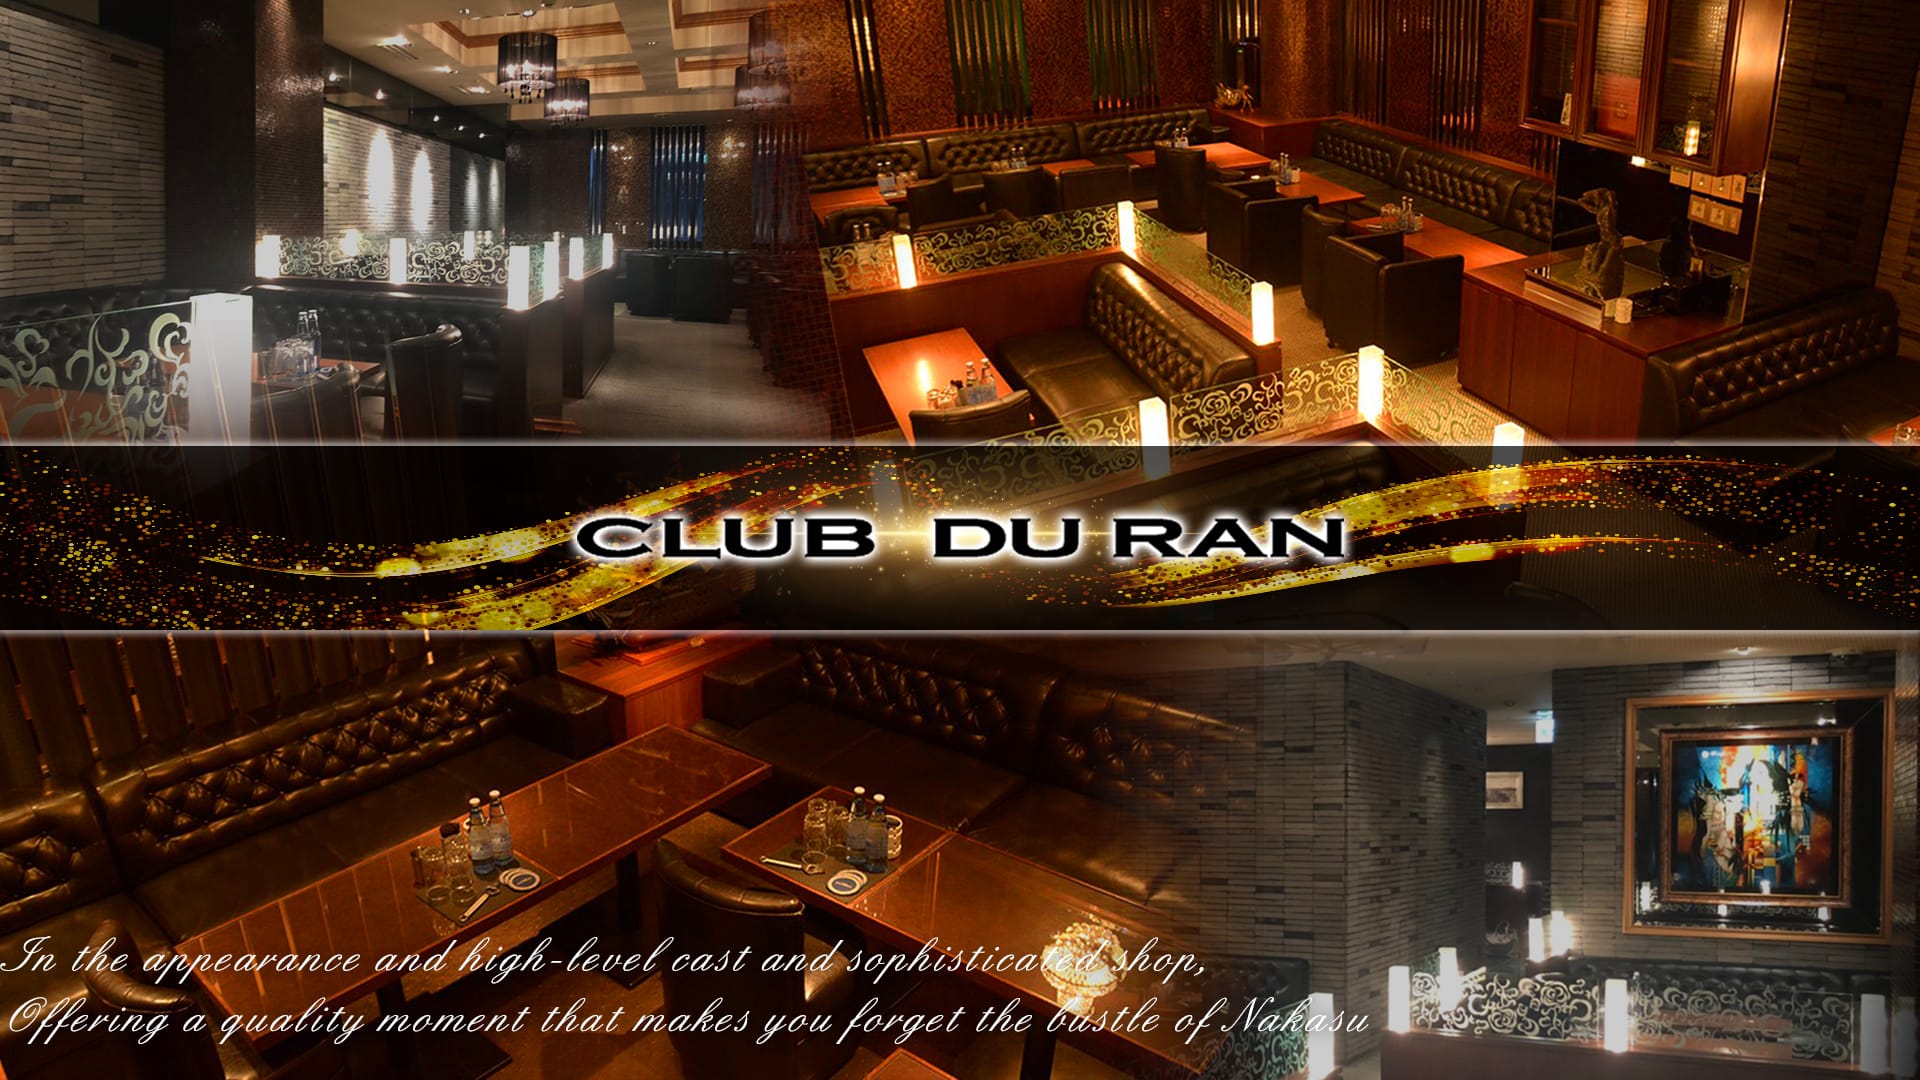 CLUB DU RAN（デュラン）【公式求人・体入情報】 中洲ニュークラブ TOP画像